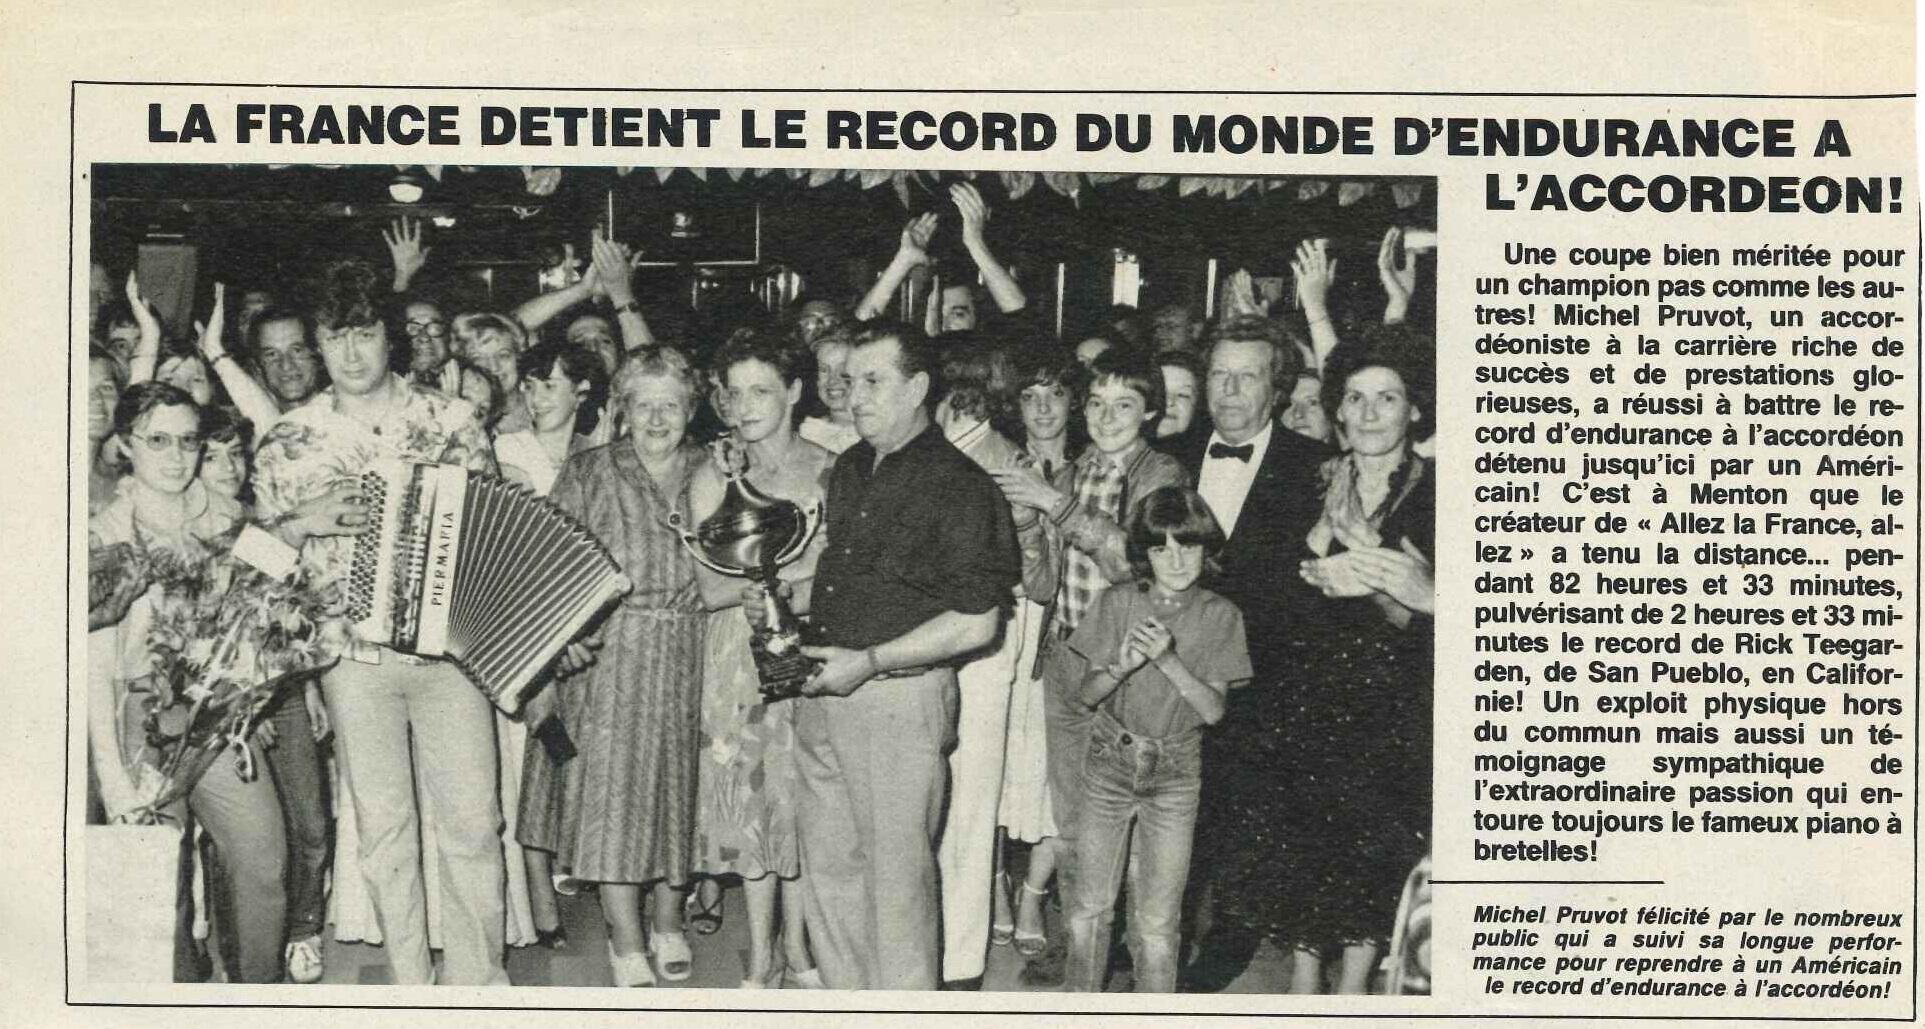 Article "Ciné-Télé-Revue" datant de 1982, fourni par Michel Pruvot